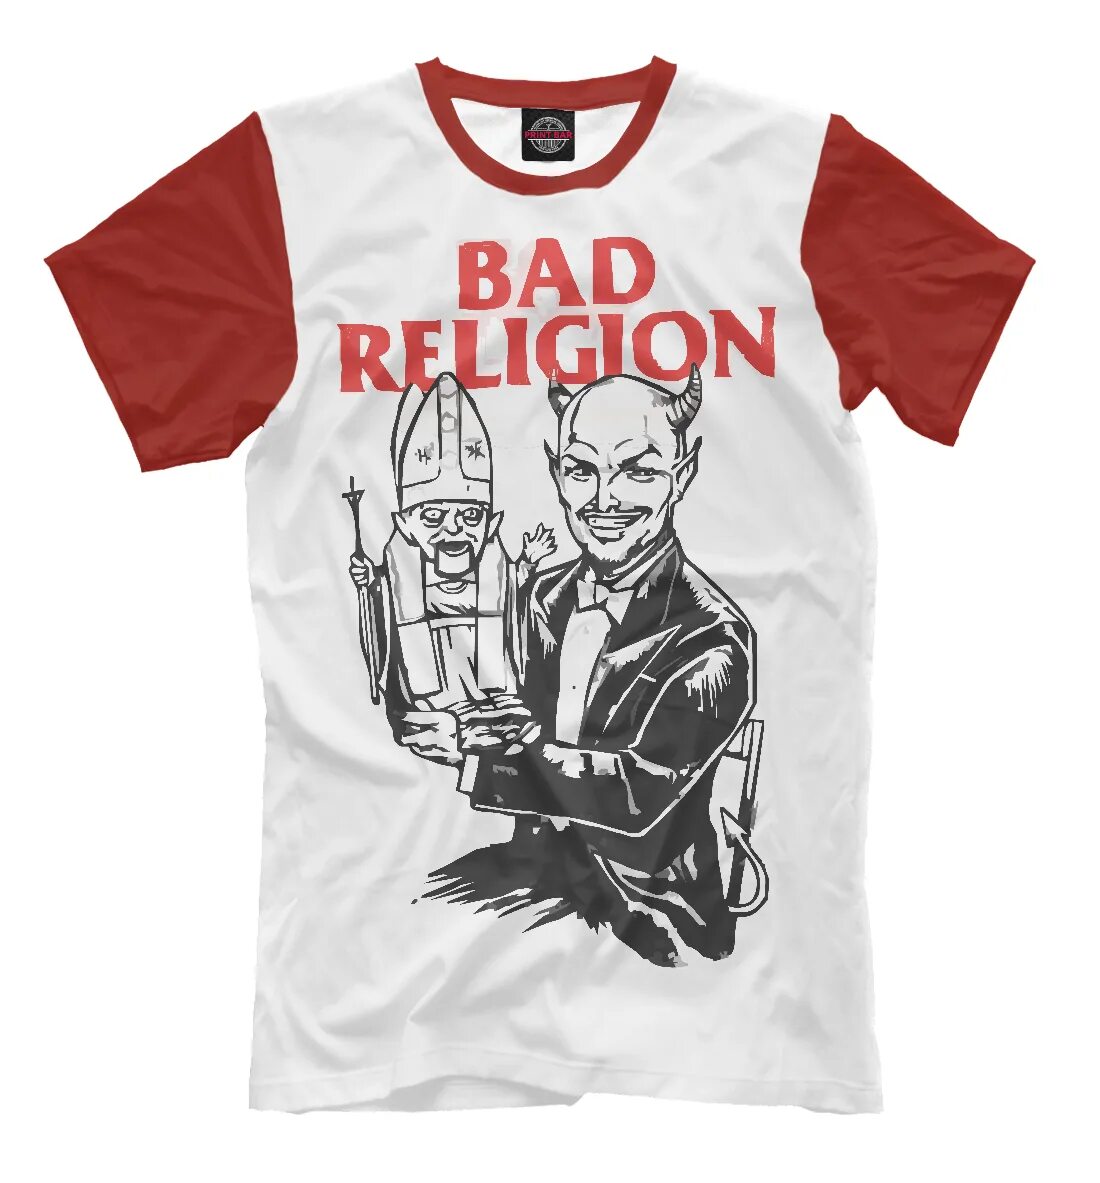 Bad Religion футболка. Футболка Religion мужская. Футболка хорошему мальчику плохую девочку. Bad Religion обои.